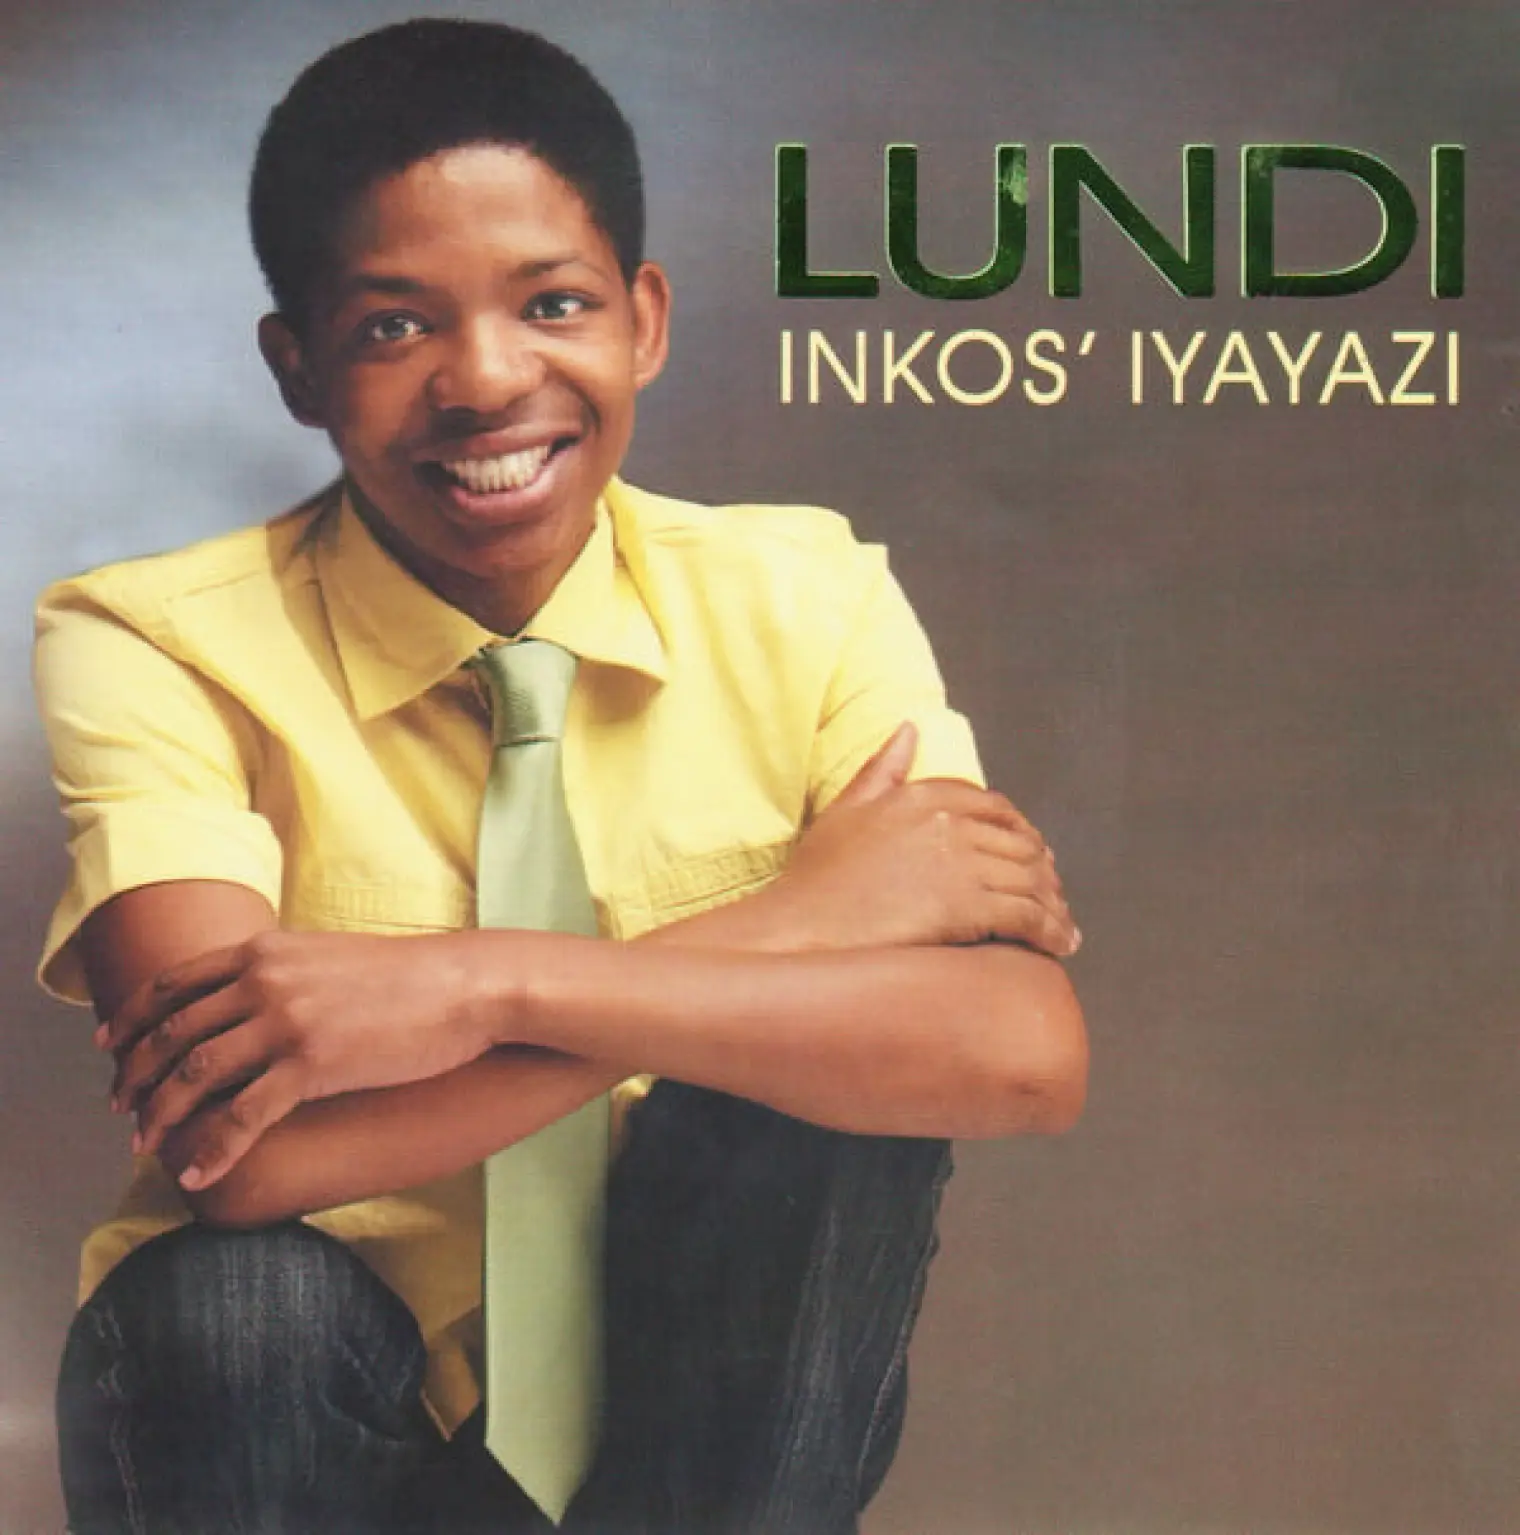 Inkos' Iyayazi -  Lundi 